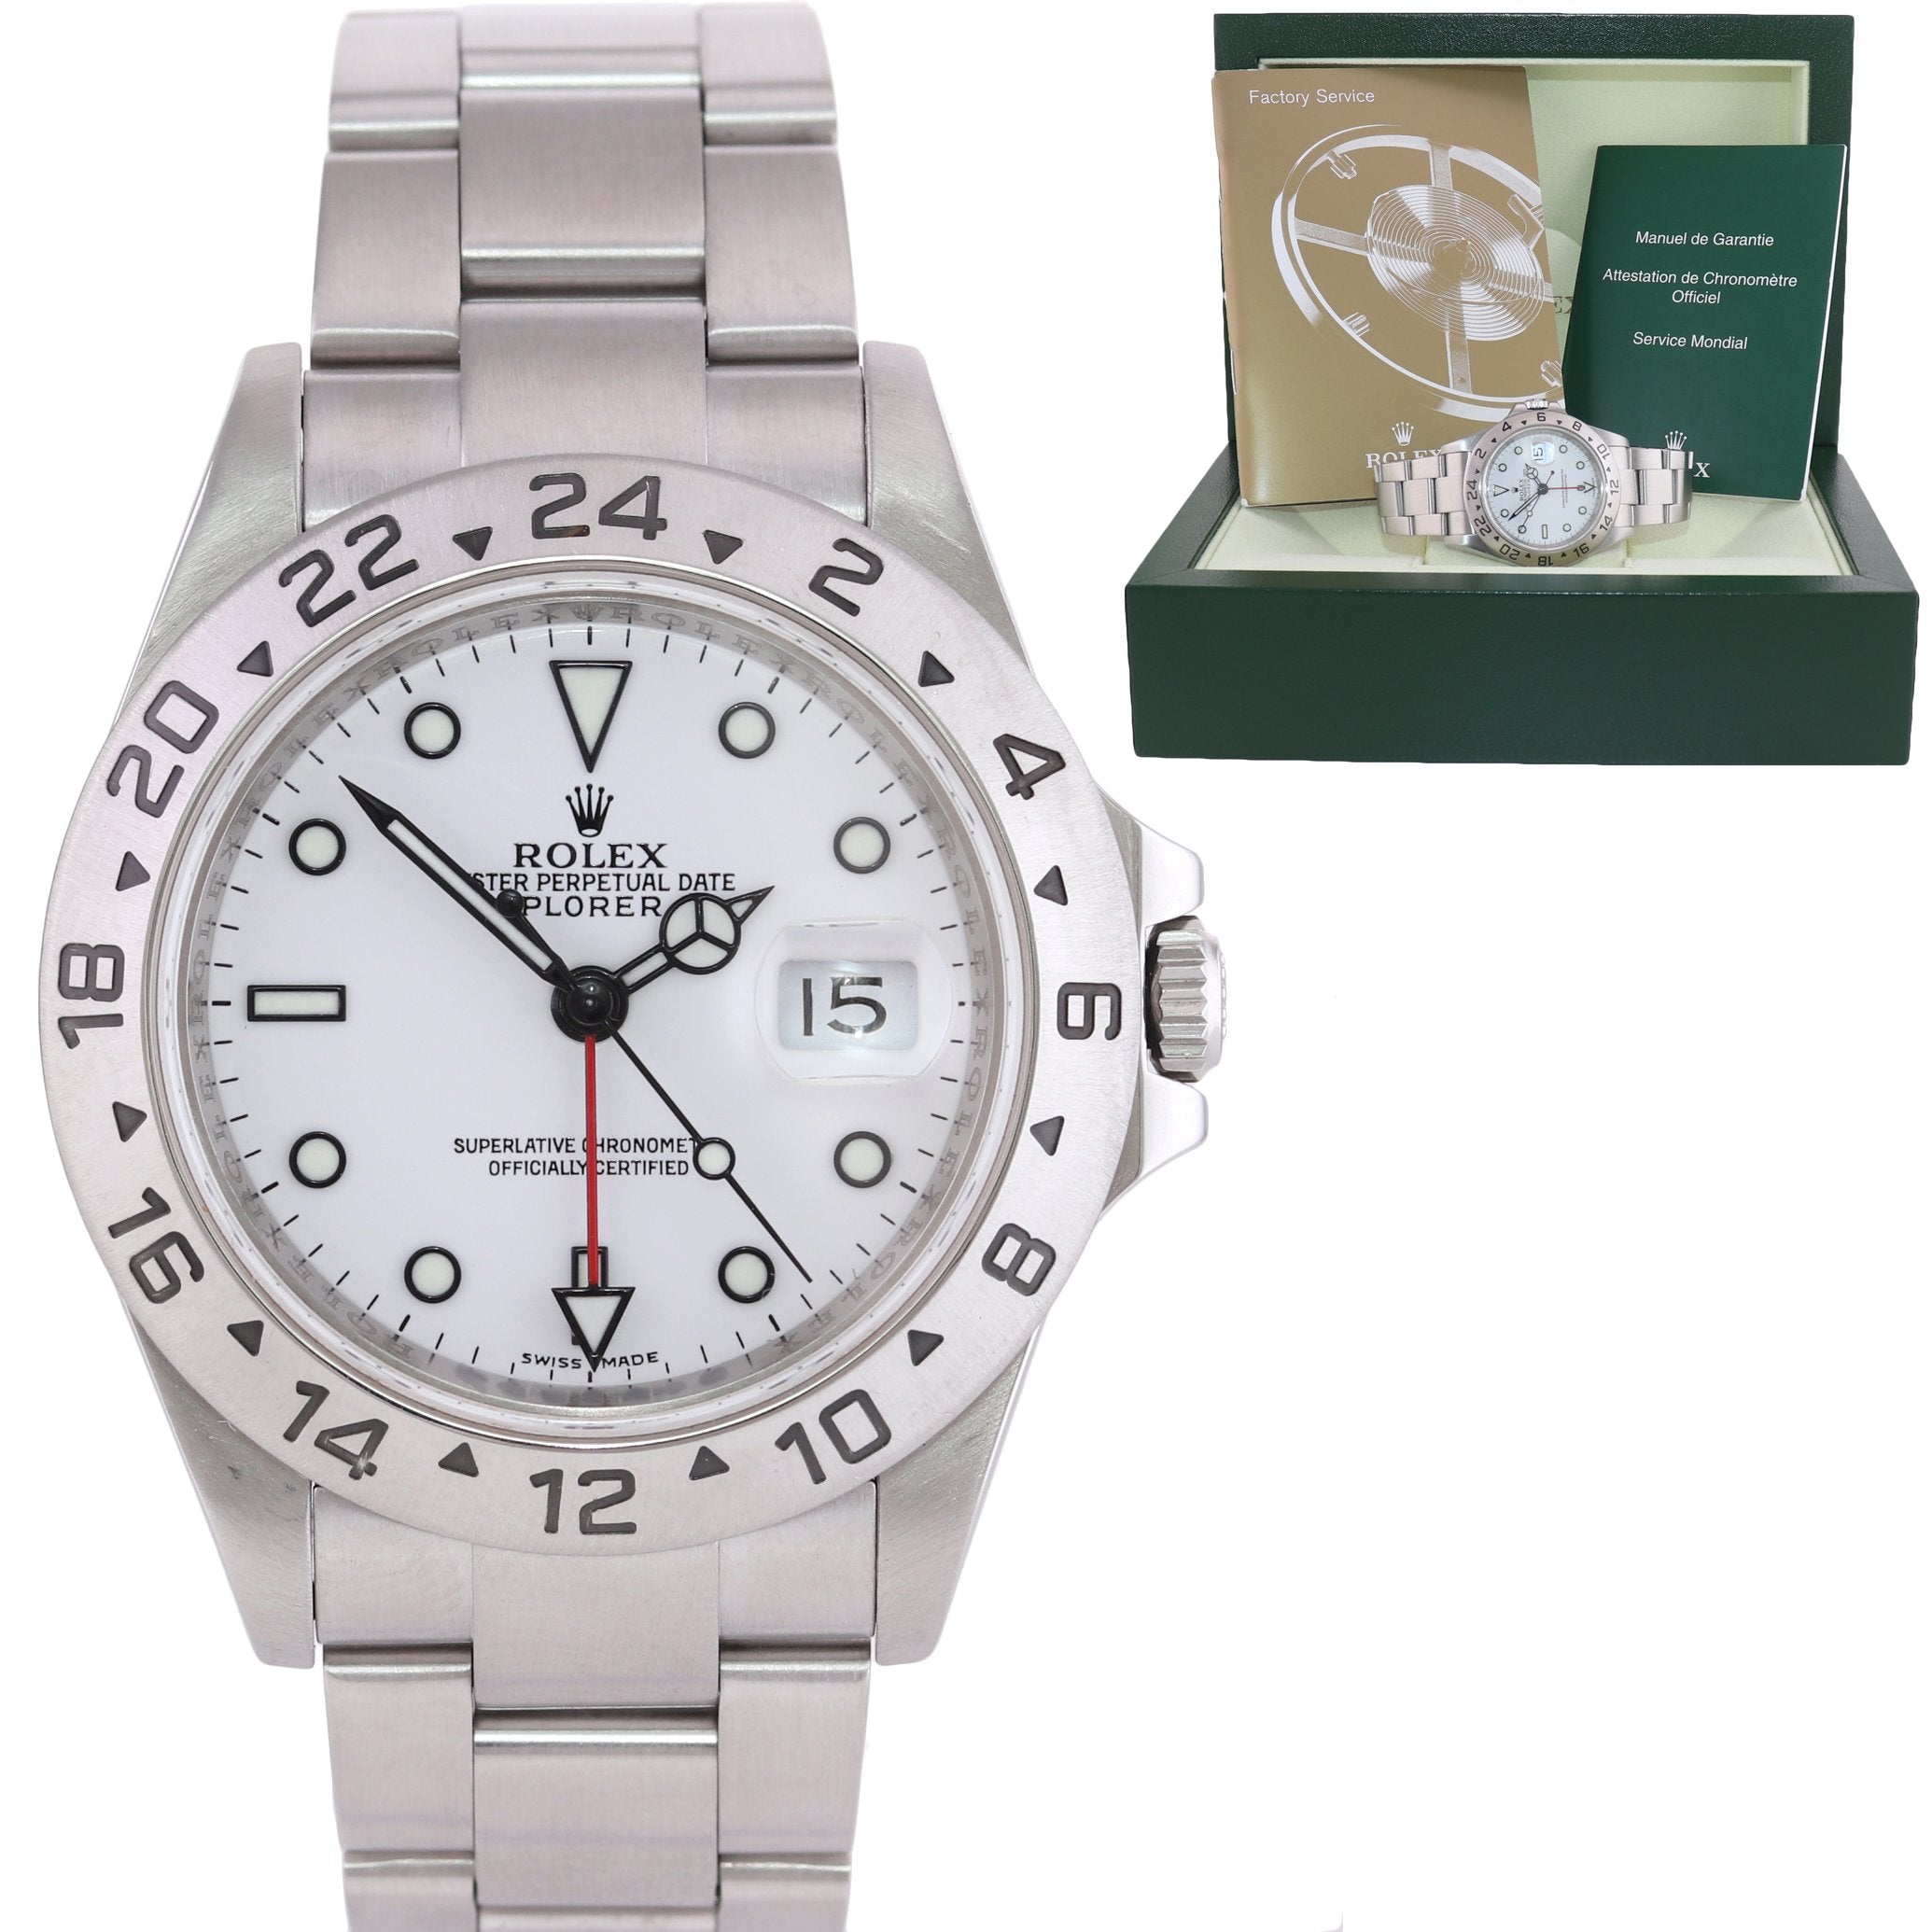 ENGRAVED REHAUT Rolex Explorer II 16570 Polar 40mm Date 3186 Watch Box